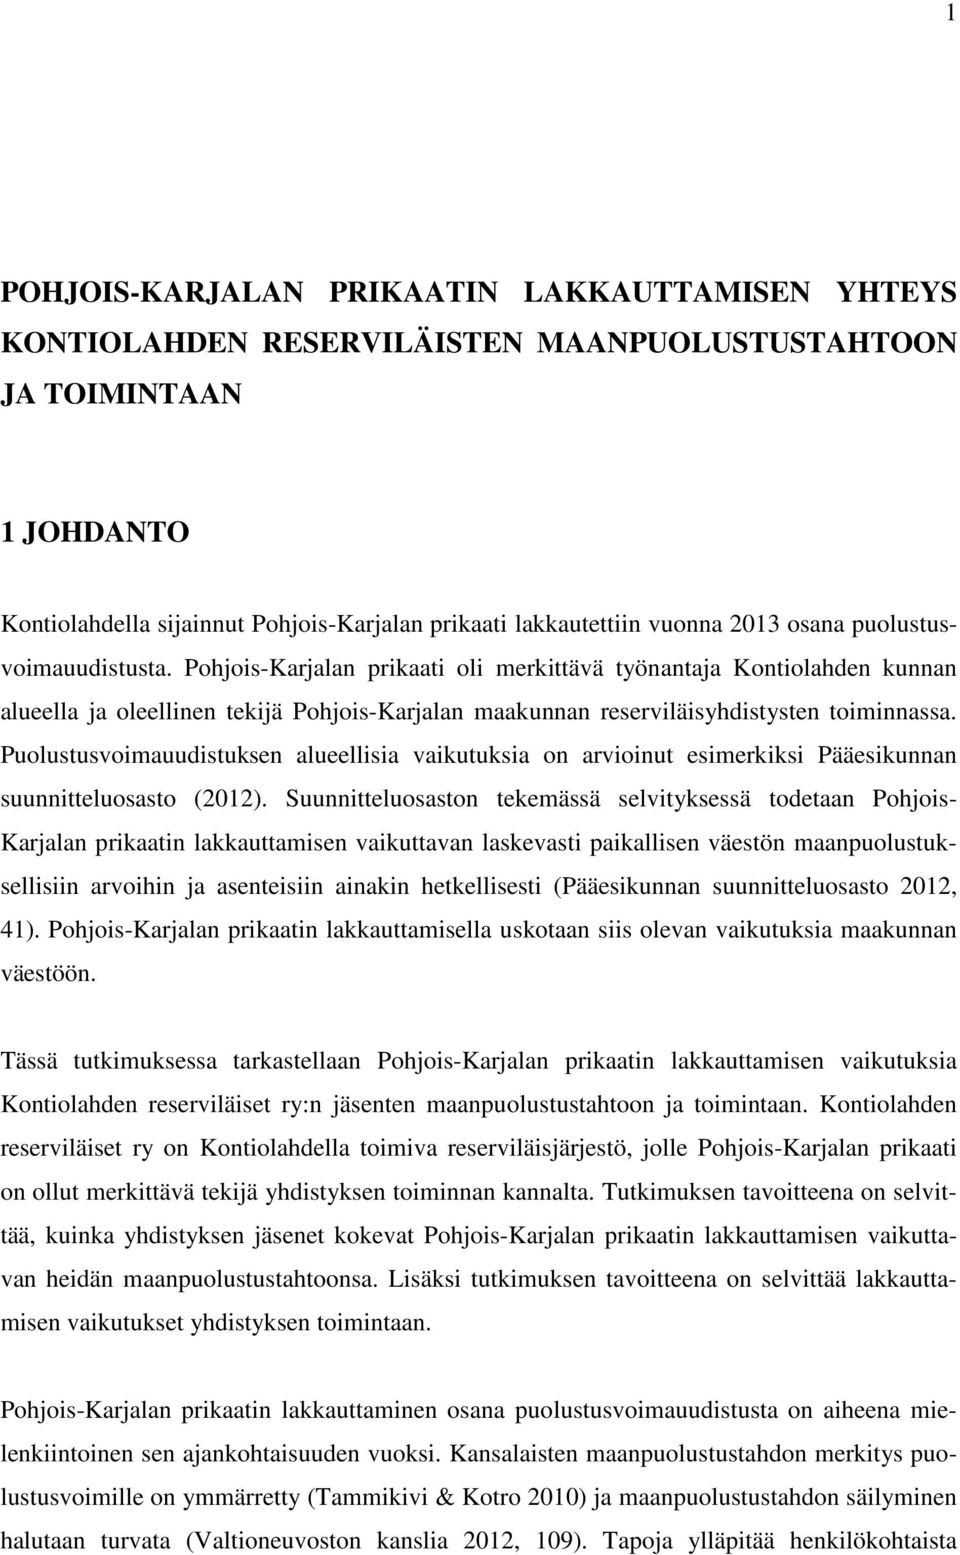 Pohjois-Karjalan prikaati oli merkittävä työnantaja Kontiolahden kunnan alueella ja oleellinen tekijä Pohjois-Karjalan maakunnan reserviläisyhdistysten toiminnassa.